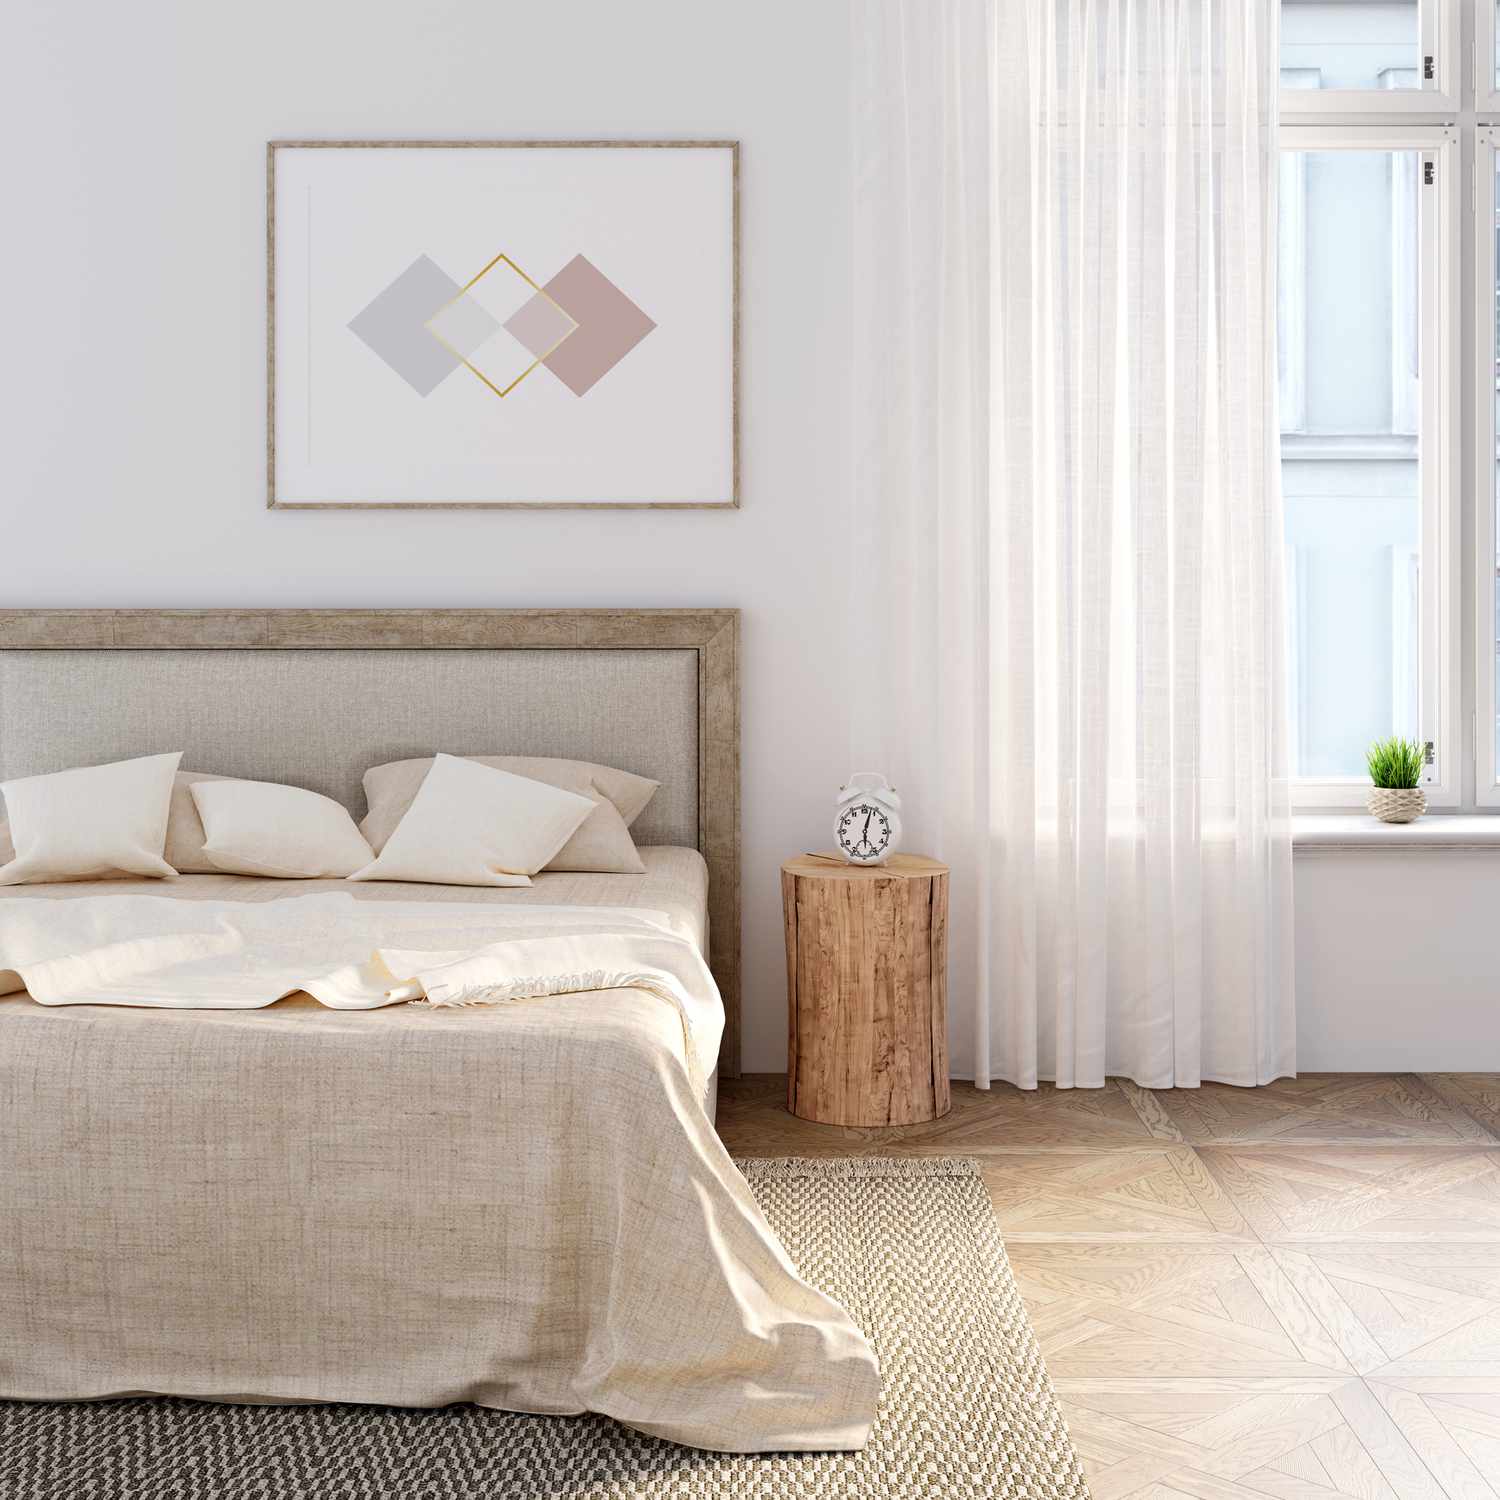 Dormitorio blanco con ropa de cama natural sobre la cama, el póster horizontal sobre el cabecero. Un despertador se alza sobre un tocón entre la cama y una ventana con cortina de lino.